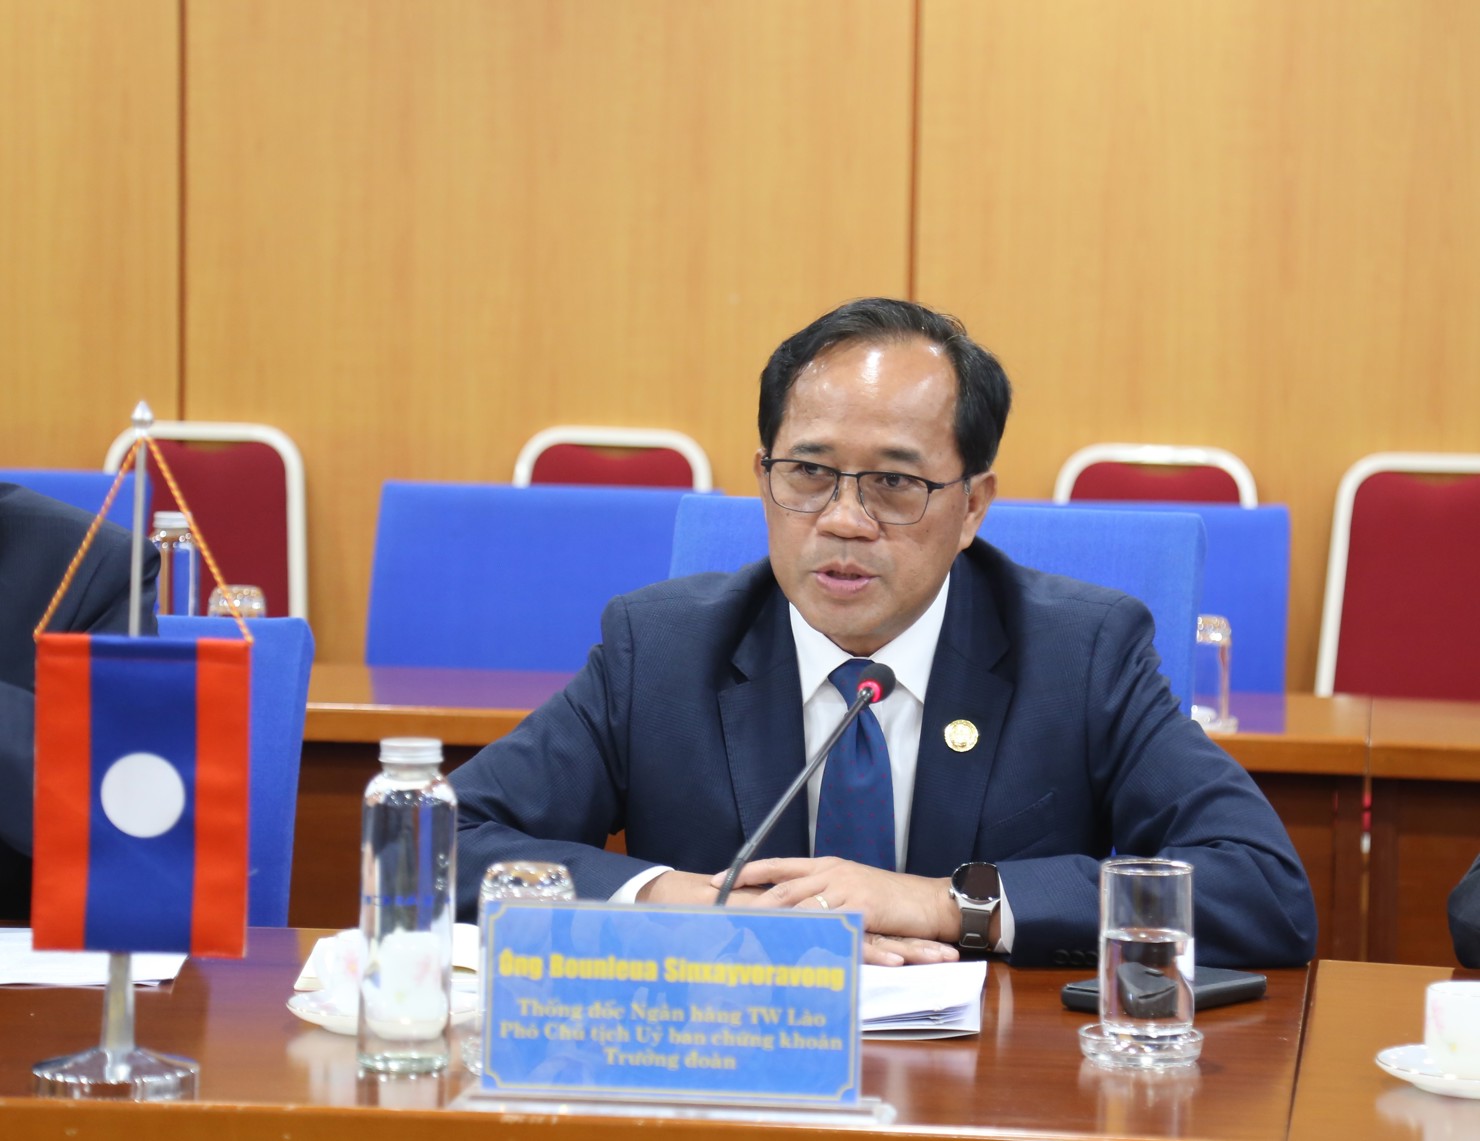 Ông Bounleua Sinxayvoravong – Thống đốc Ngân hàng Trung ương Lào, Phó Chủ tịch Ủy ban Chứng khoán Lào cảm ơn sự tiếp đón chu đáo của Bộ Tài chính Việt Nam.